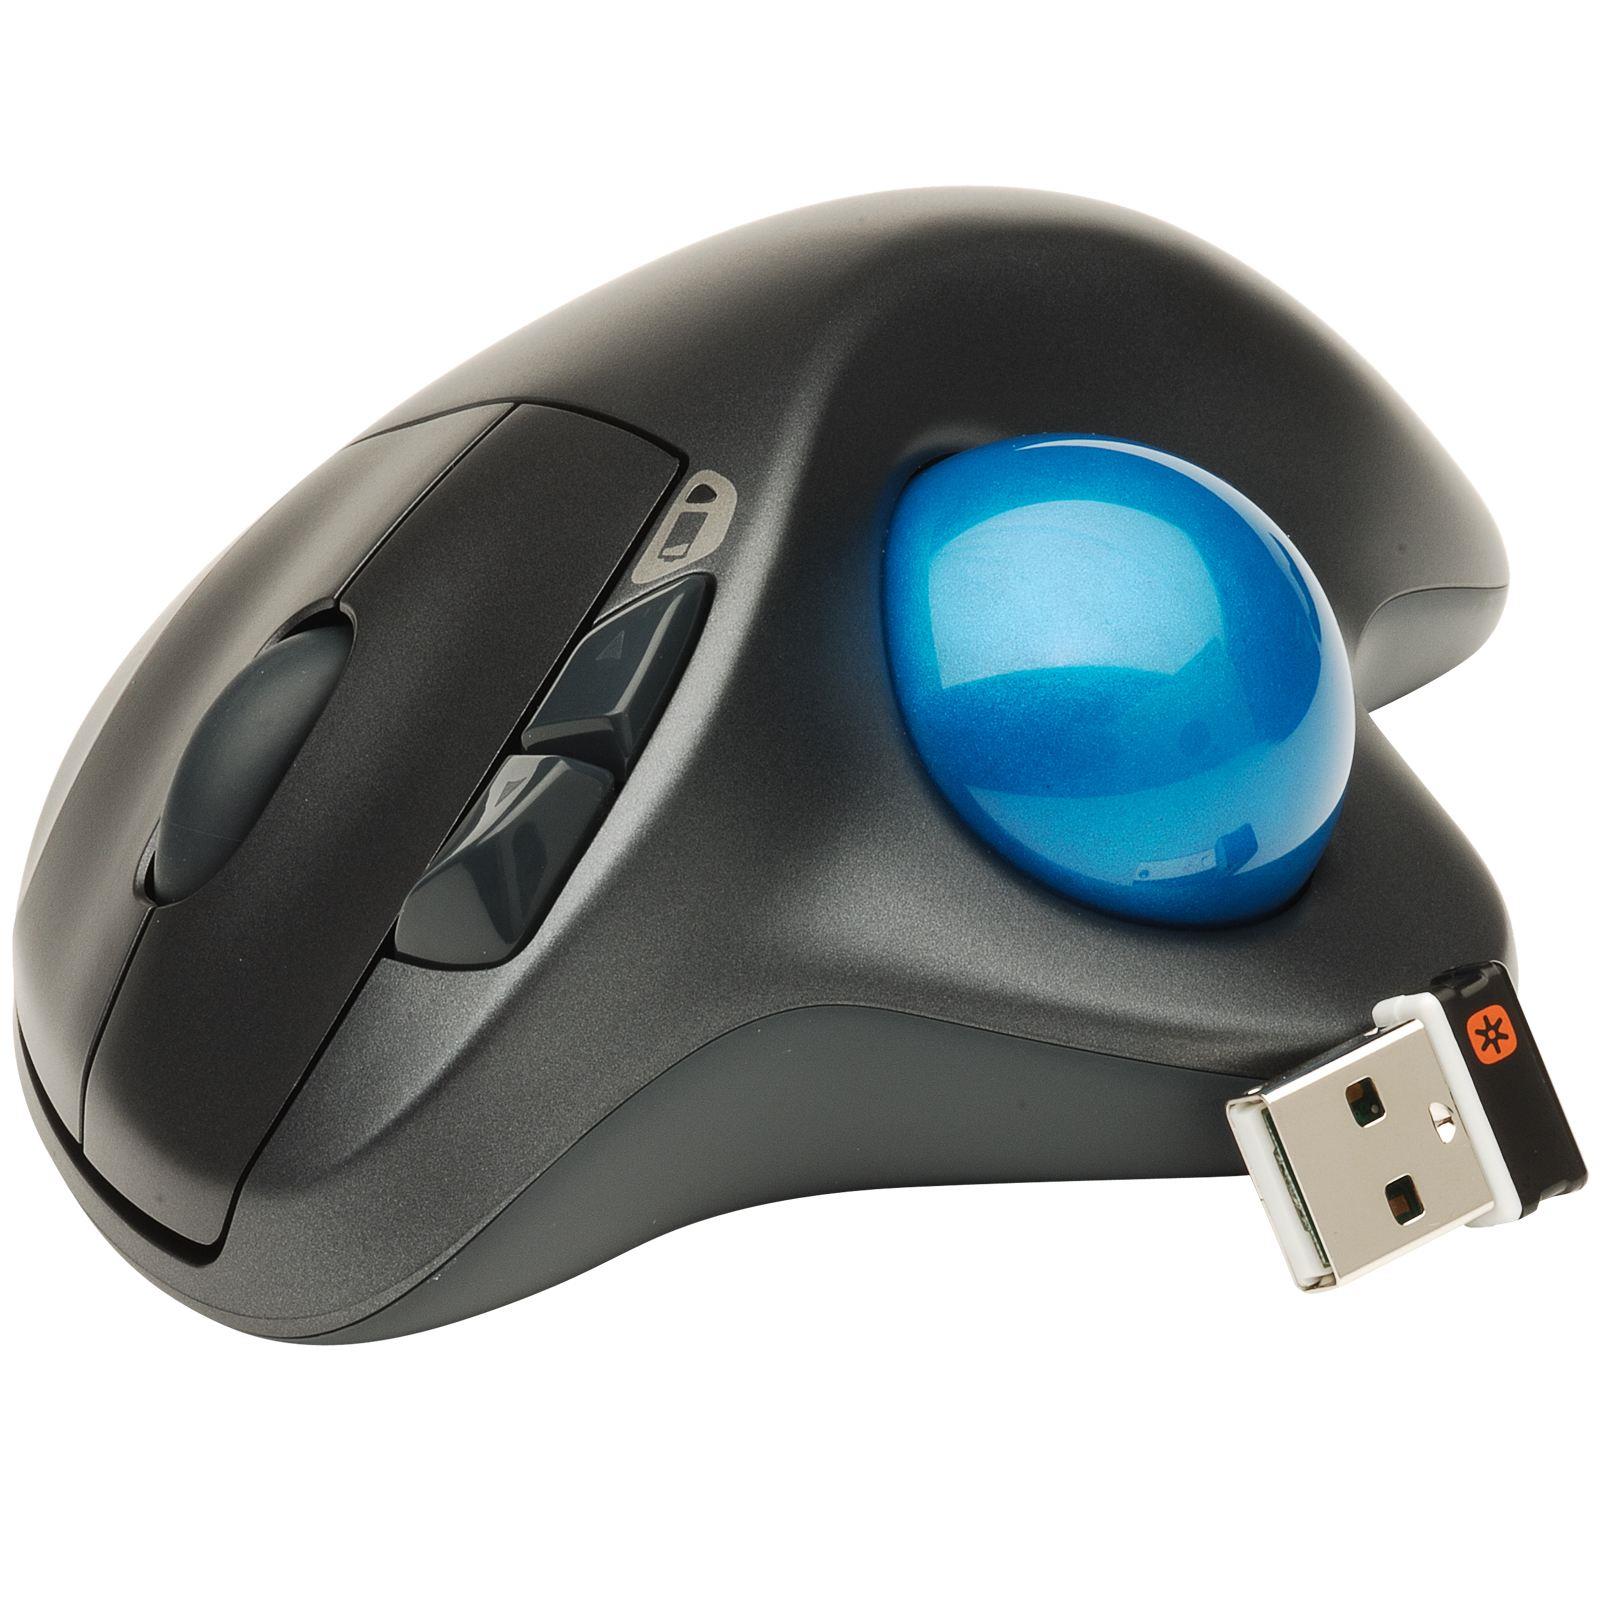 Шаре компьютерное. Logitech m570 Wireless Trackball (910-002090). Мышь Logitech Trackball. Трекбол Logitech m570, черный. Wireless Trackball m570.